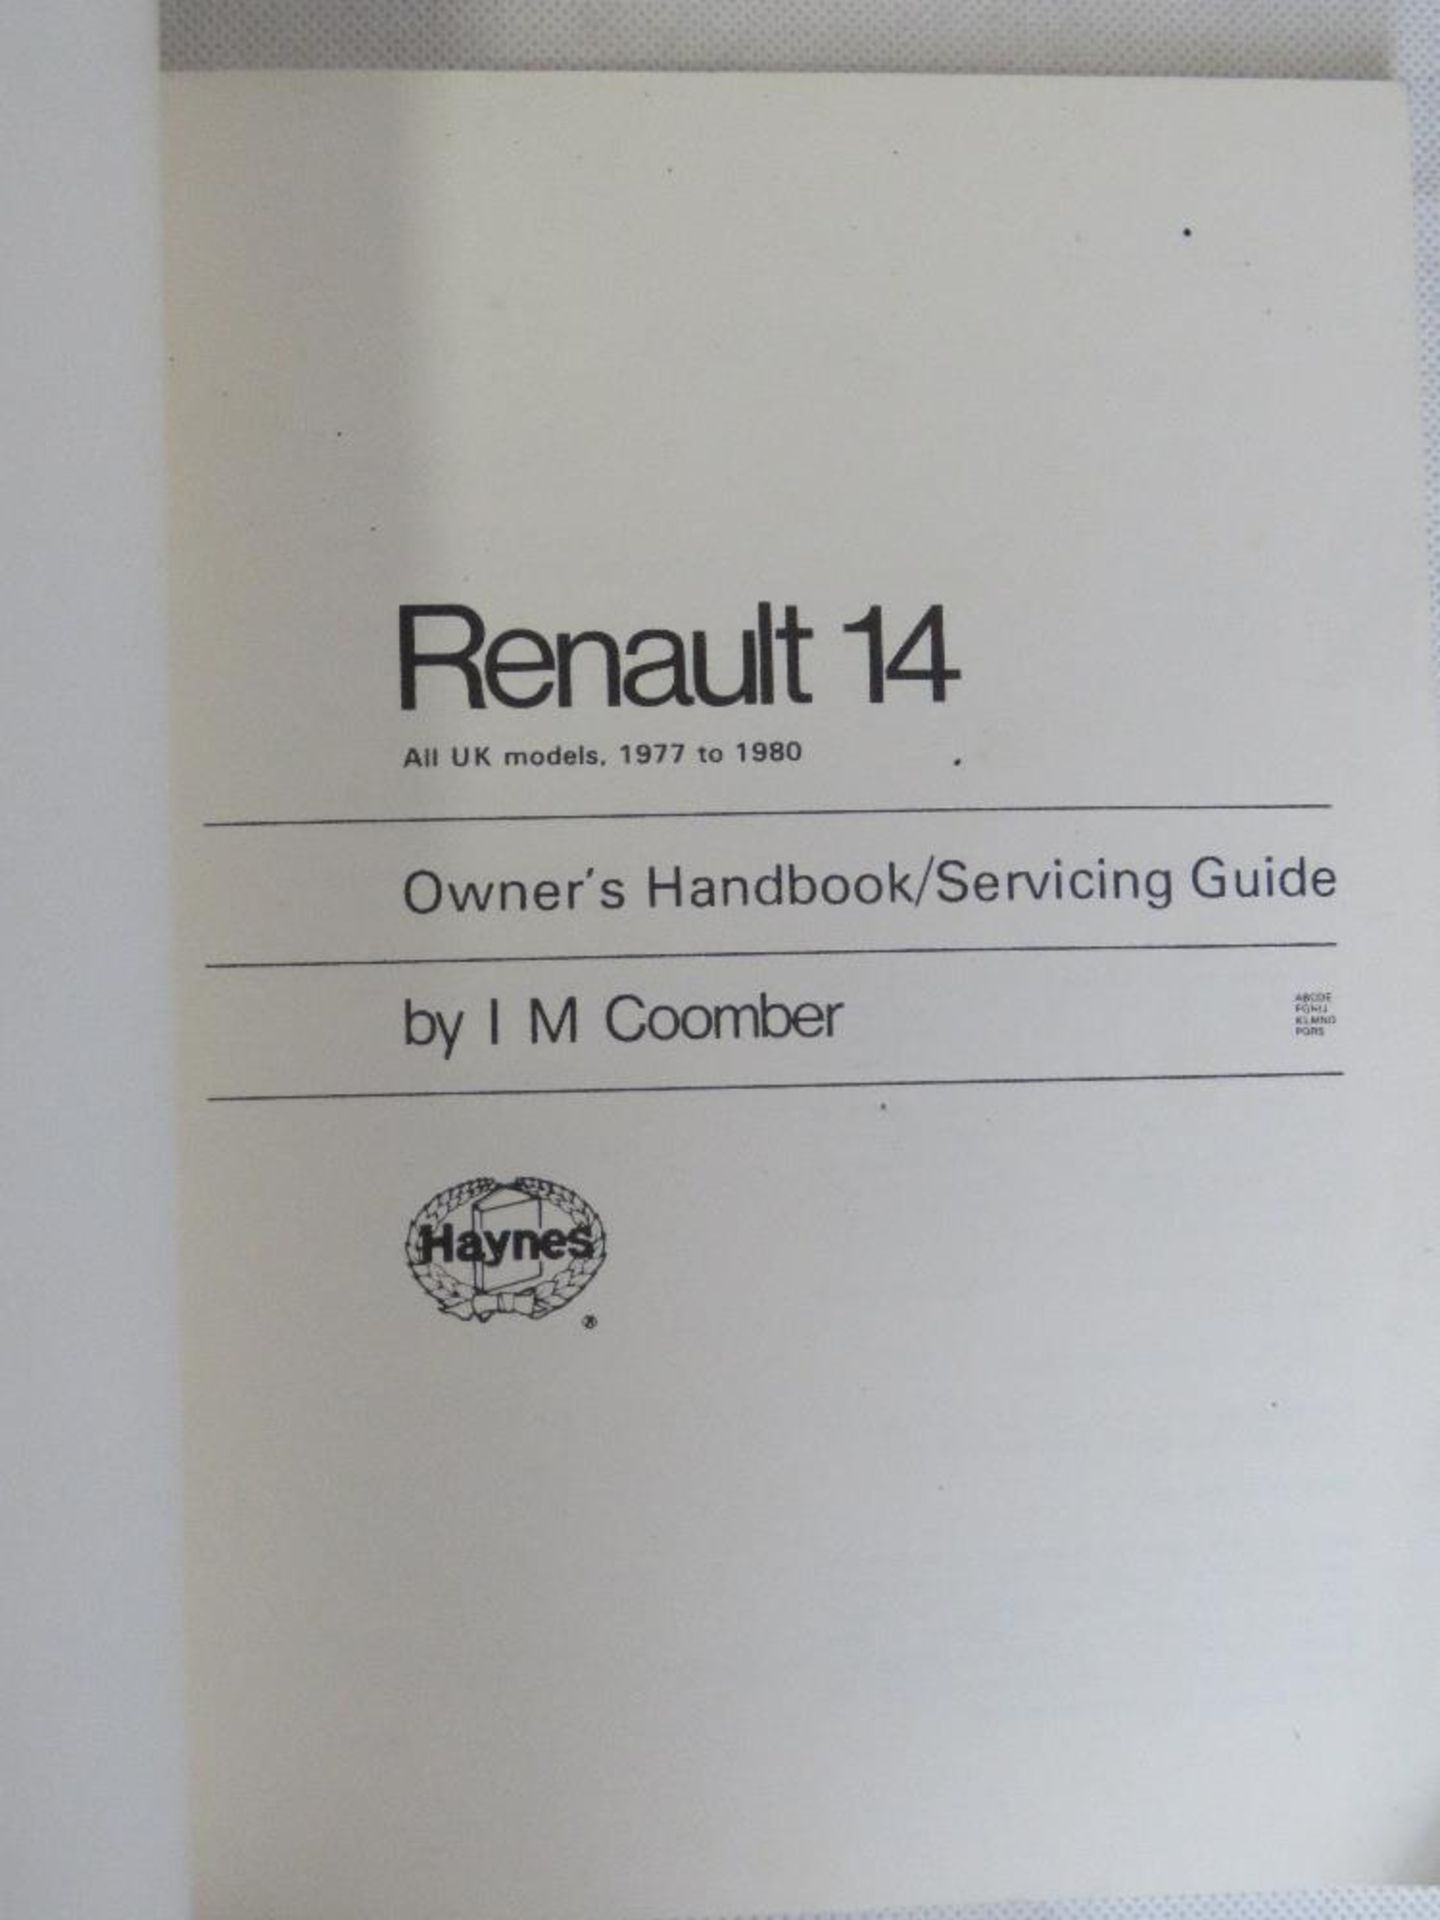 Renault 14 owners handbook by Haynes. - Image 2 of 2